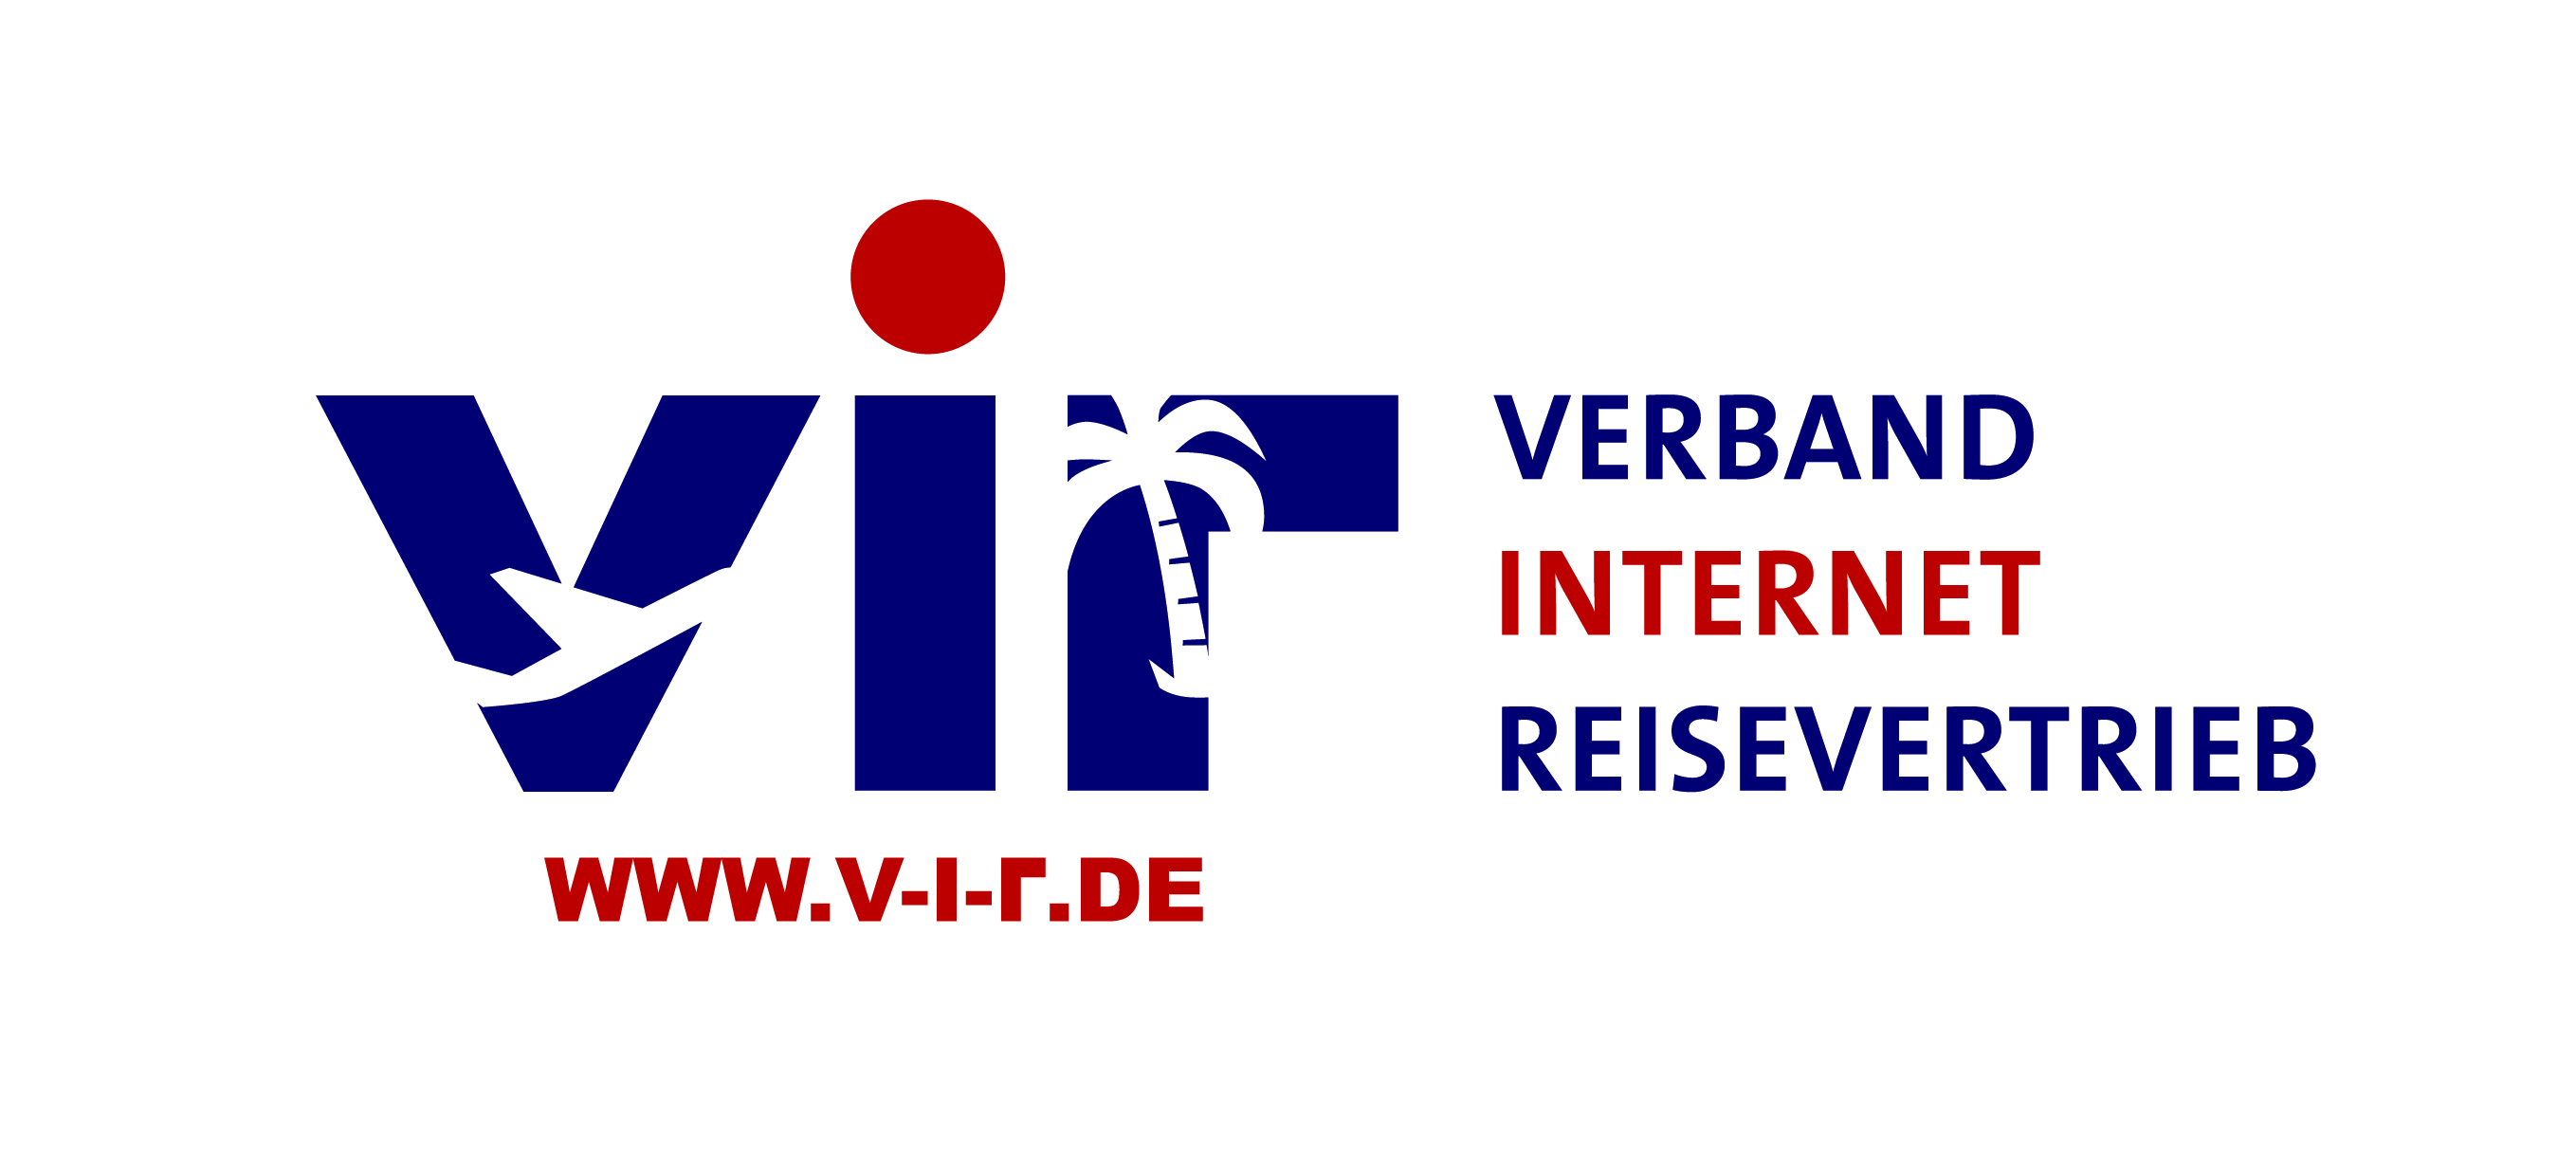 Verband Internet Reisevertrieb e.V. (VIR)